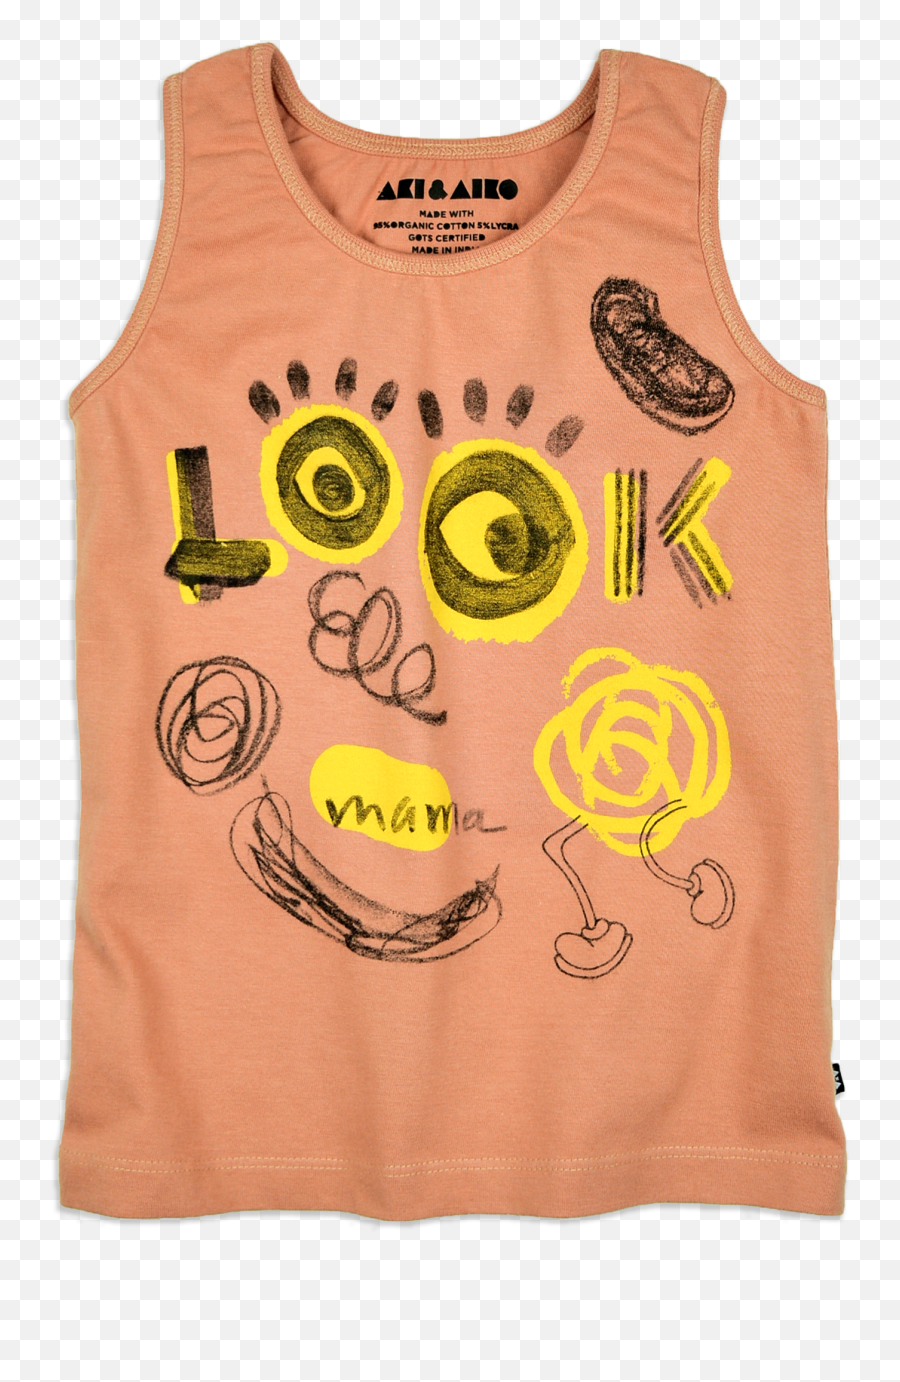 Aki Aiko Emoji,Glory Boyz Tank Top Emojis Shirt